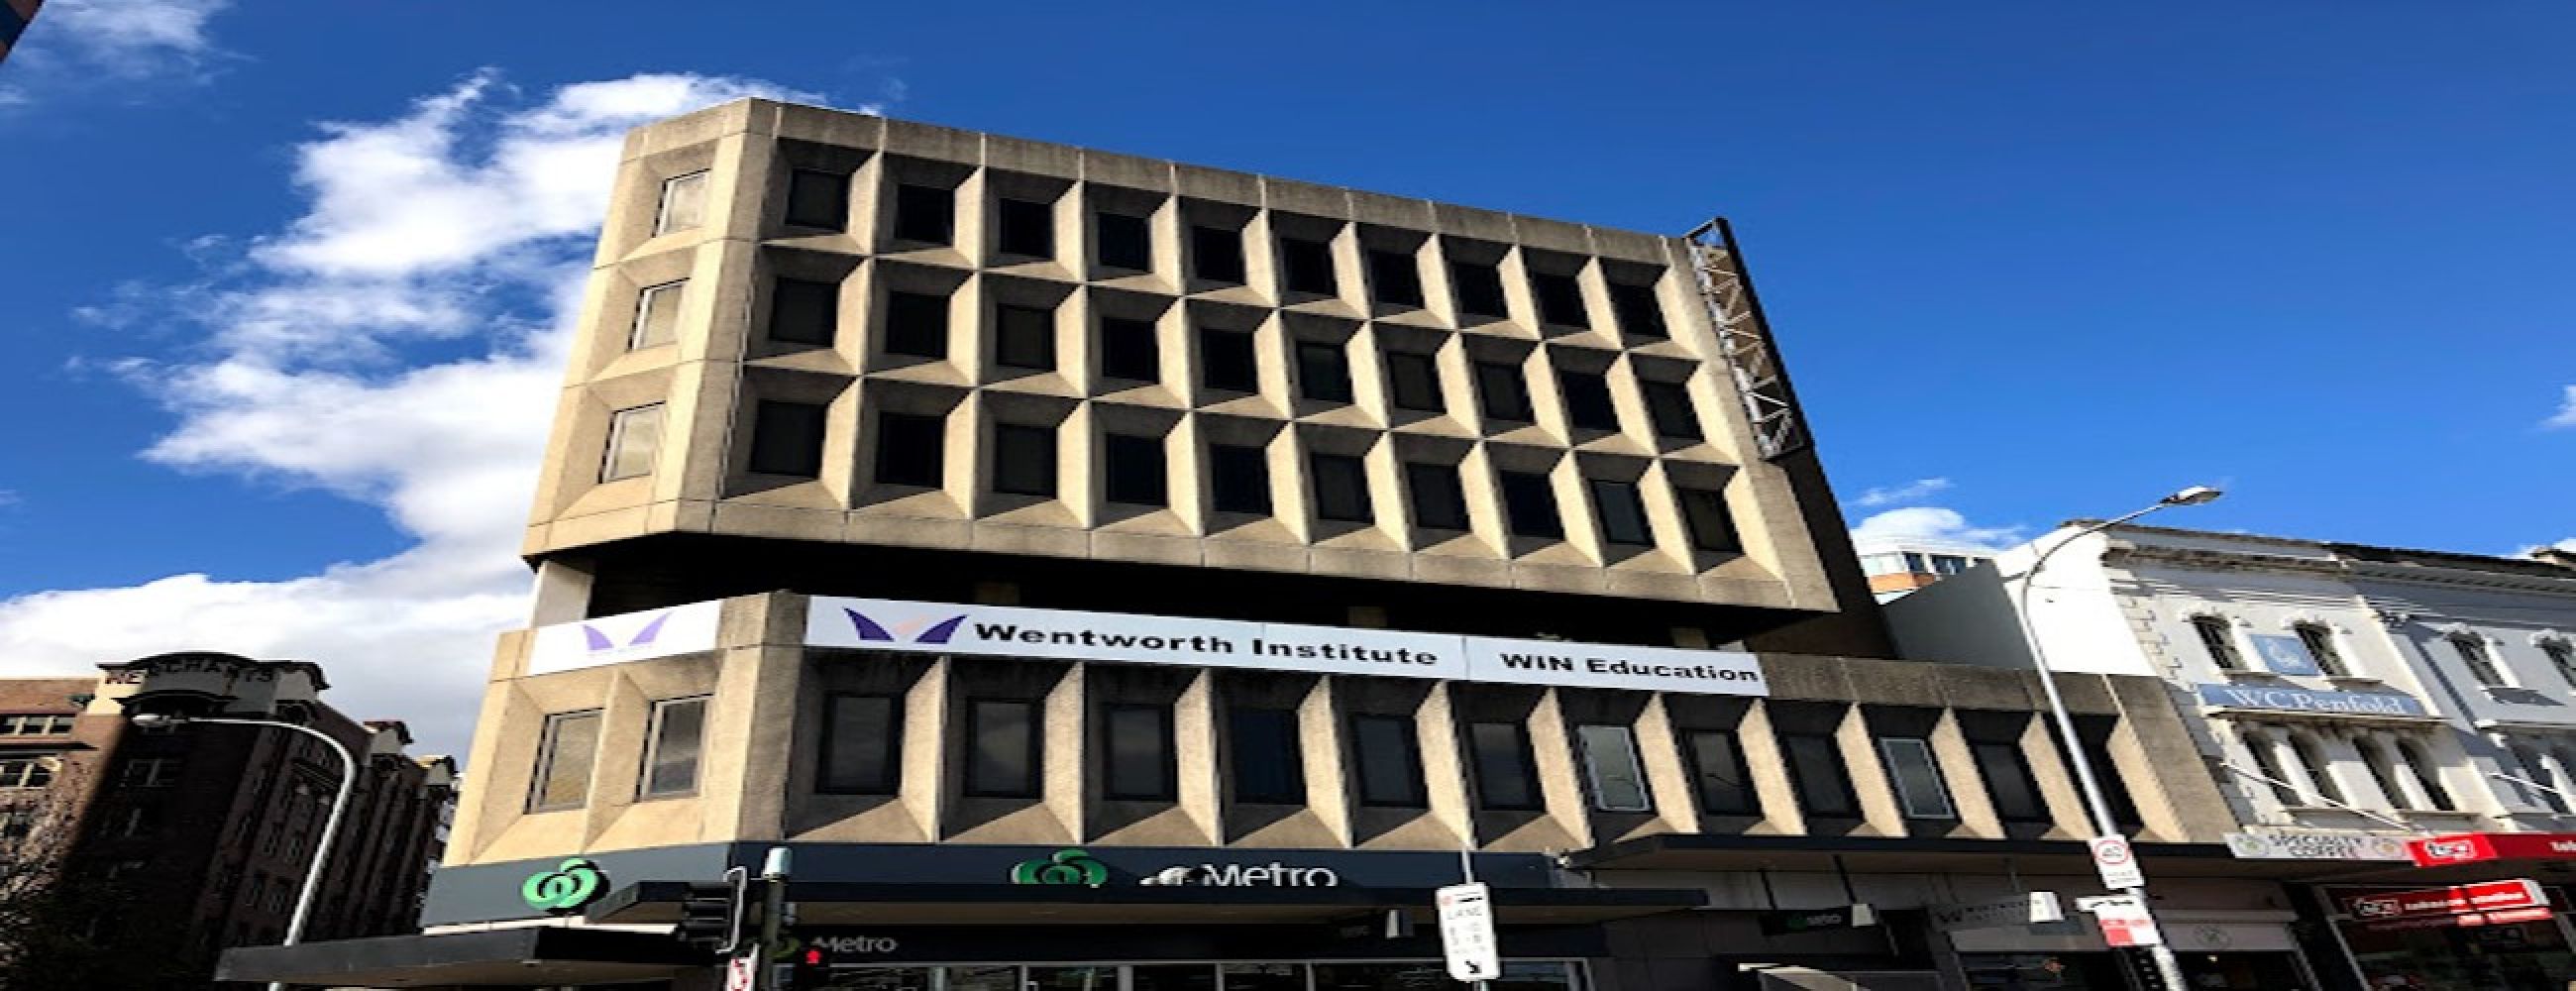 Wentworth Institute